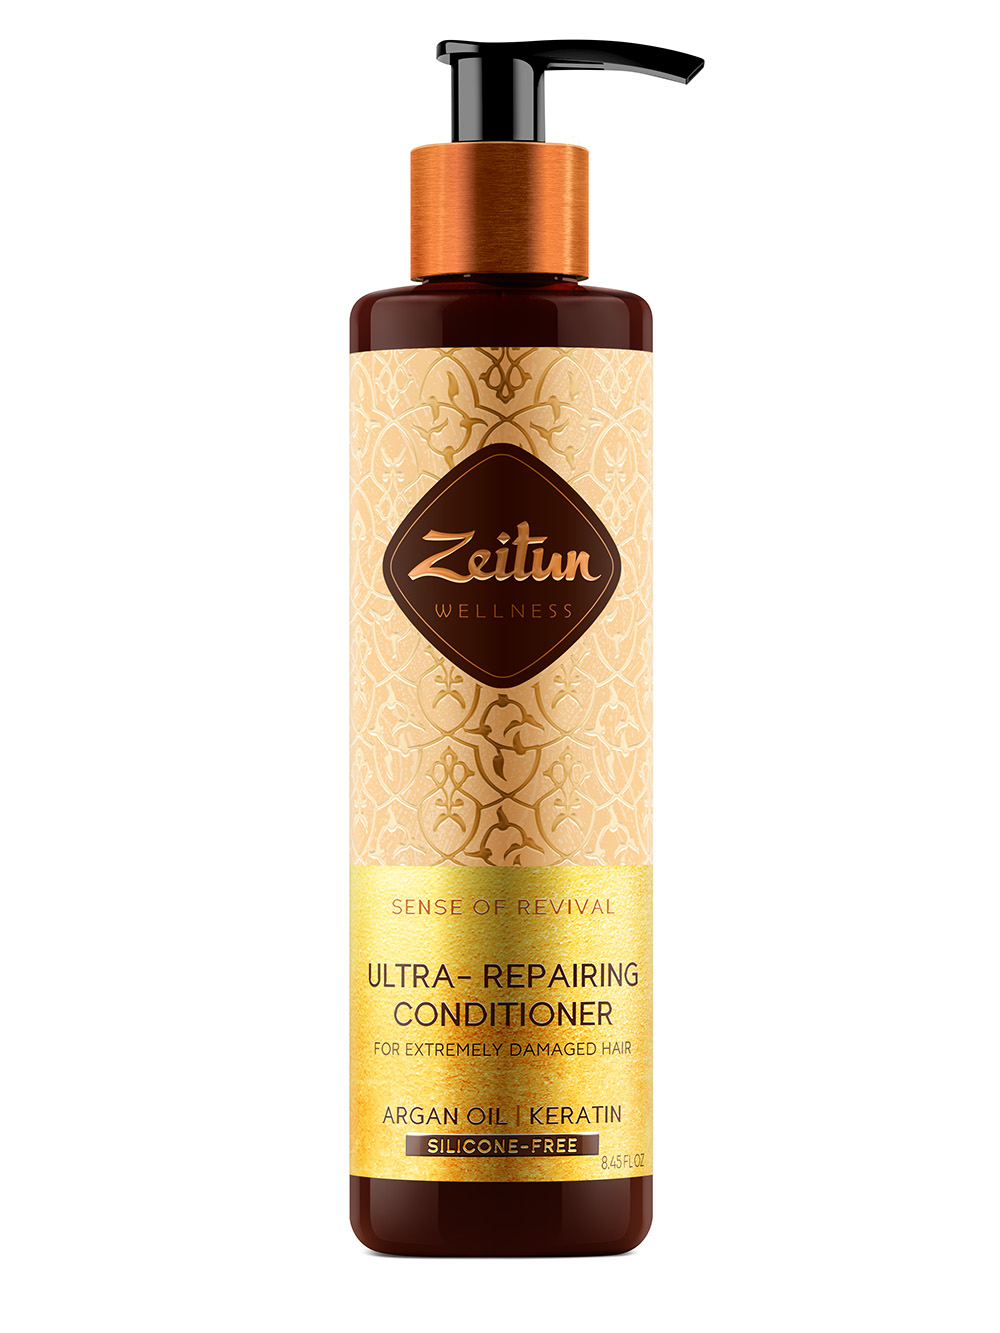 Zeitun Бальзам-кондиционер для поврежденных волос Ритуал восстановления, 250 мл (Zeitun, Wellness)